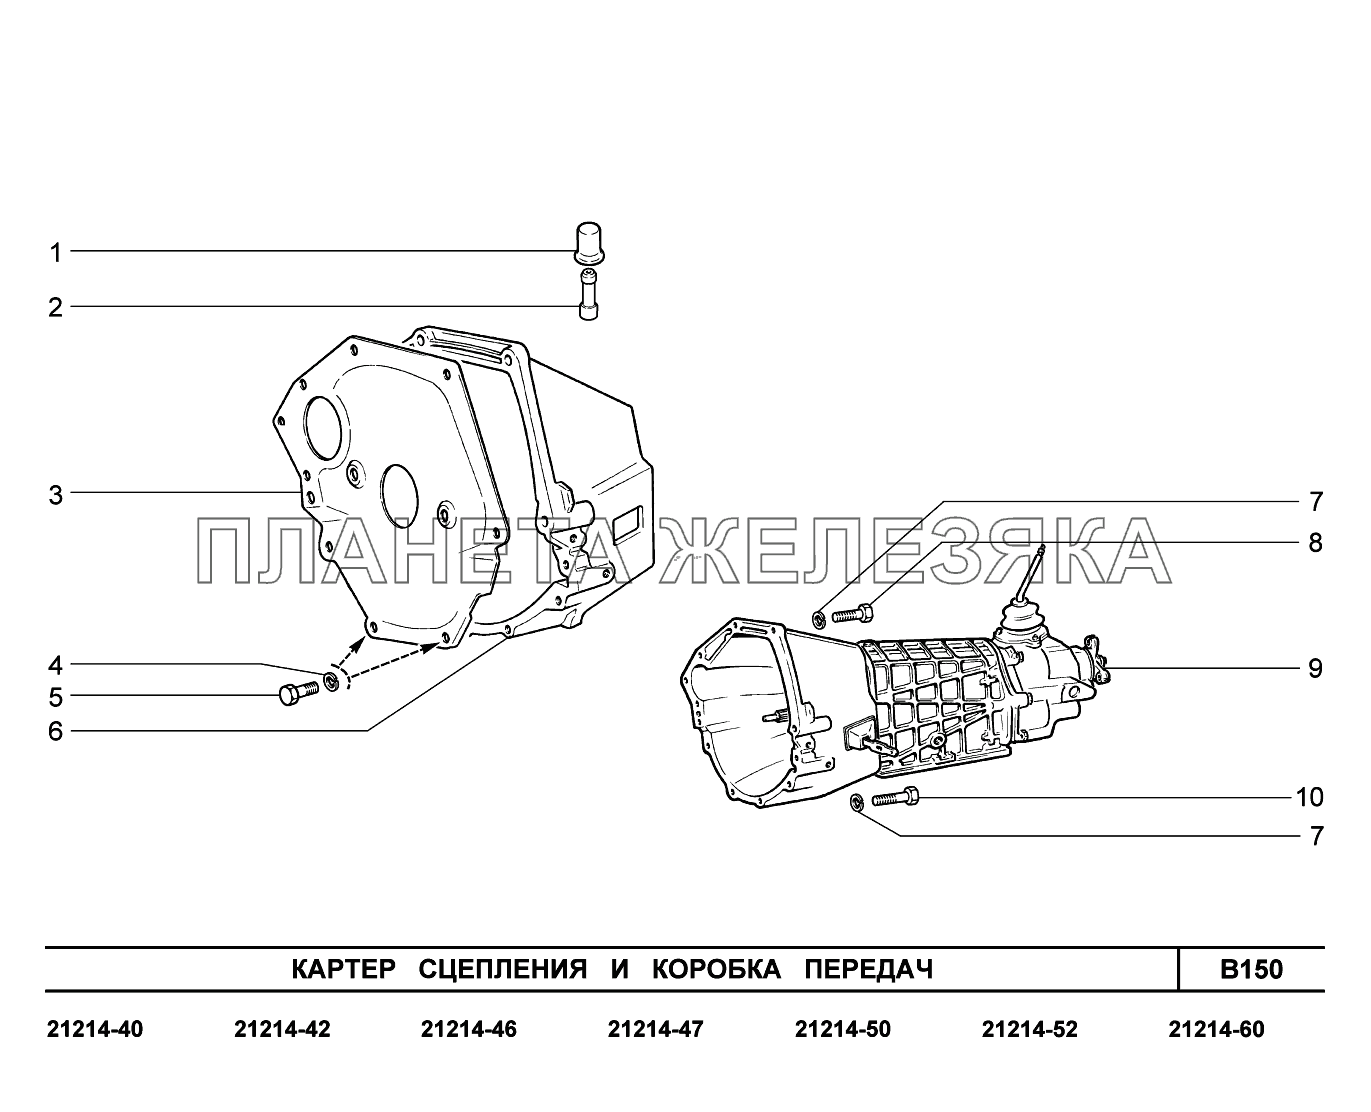 B150. Картер сцепления и коробка передач Lada 4x4 Urban